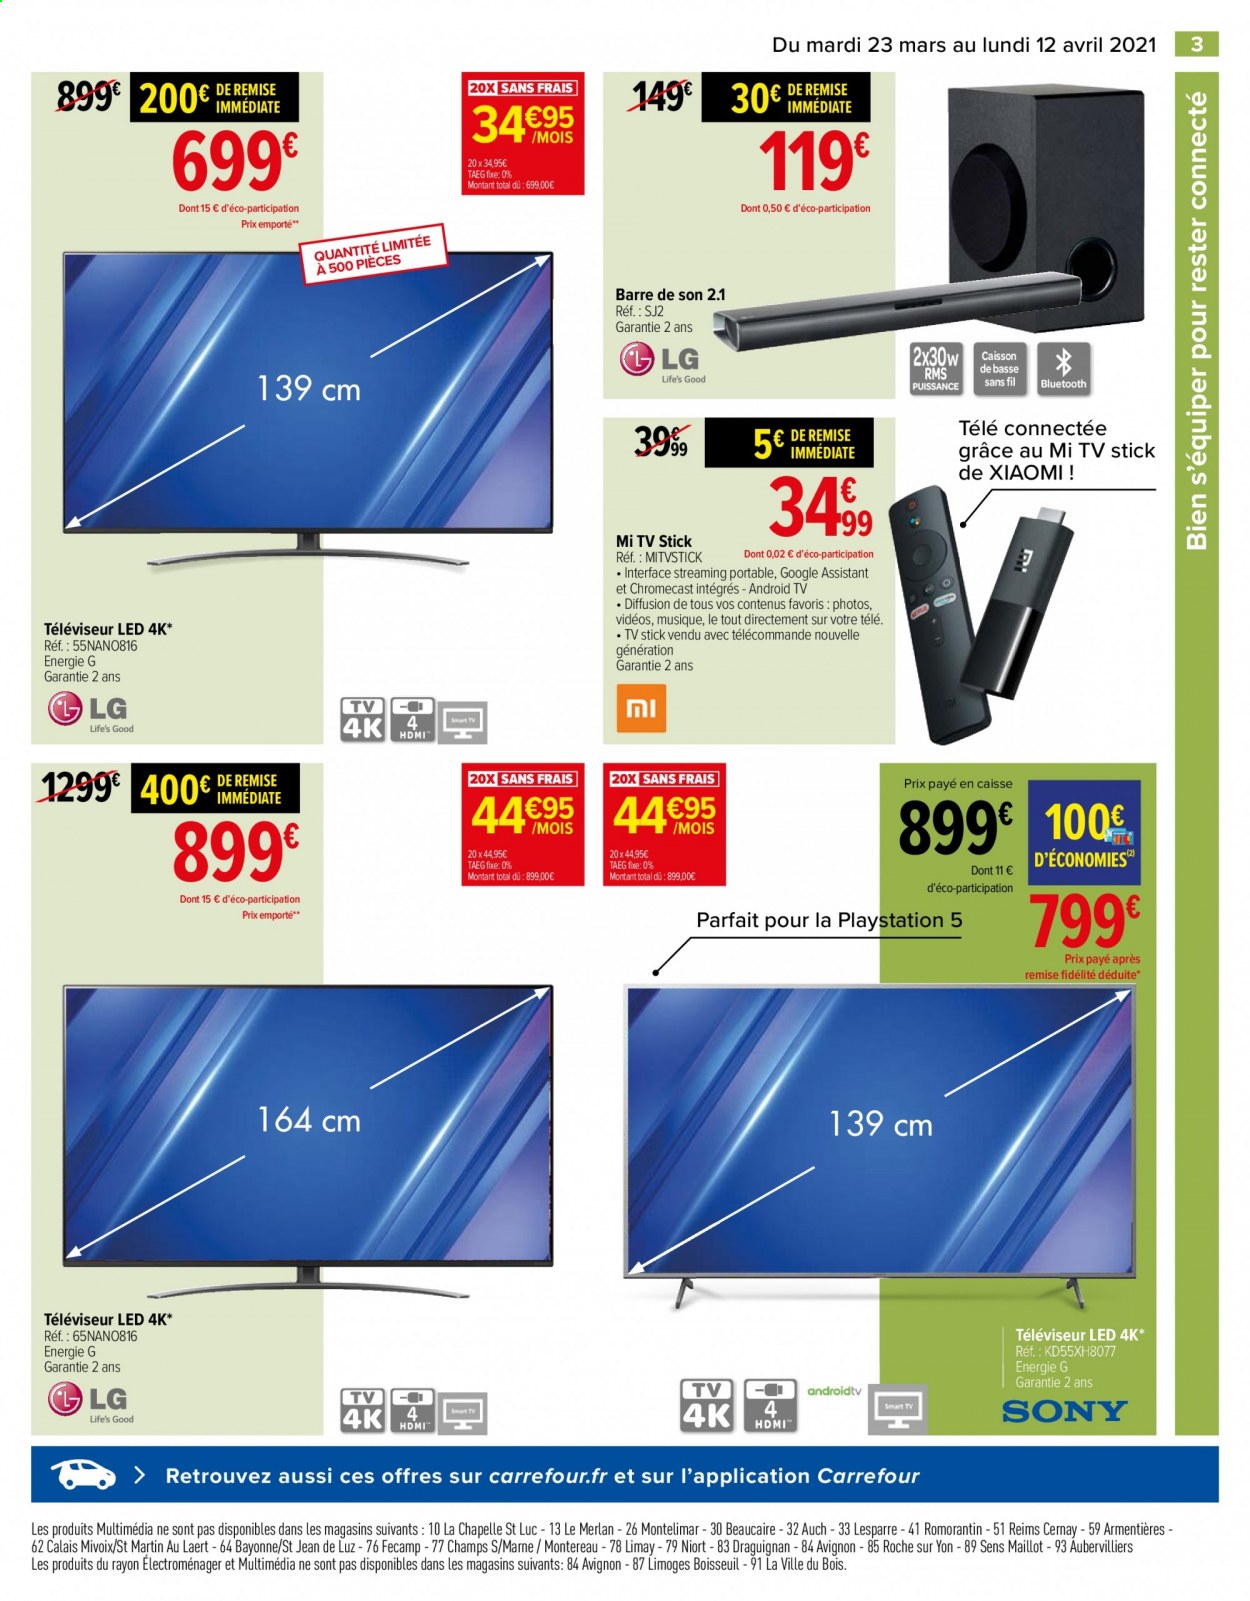 thumbnail - Catalogue Carrefour Hypermarchés - 23/03/2021 - 12/04/2021 - Produits soldés - Xiaomi, Playstation, PS5, téléviseur, android tv, téléviseur LED, barre de son. Page 4.